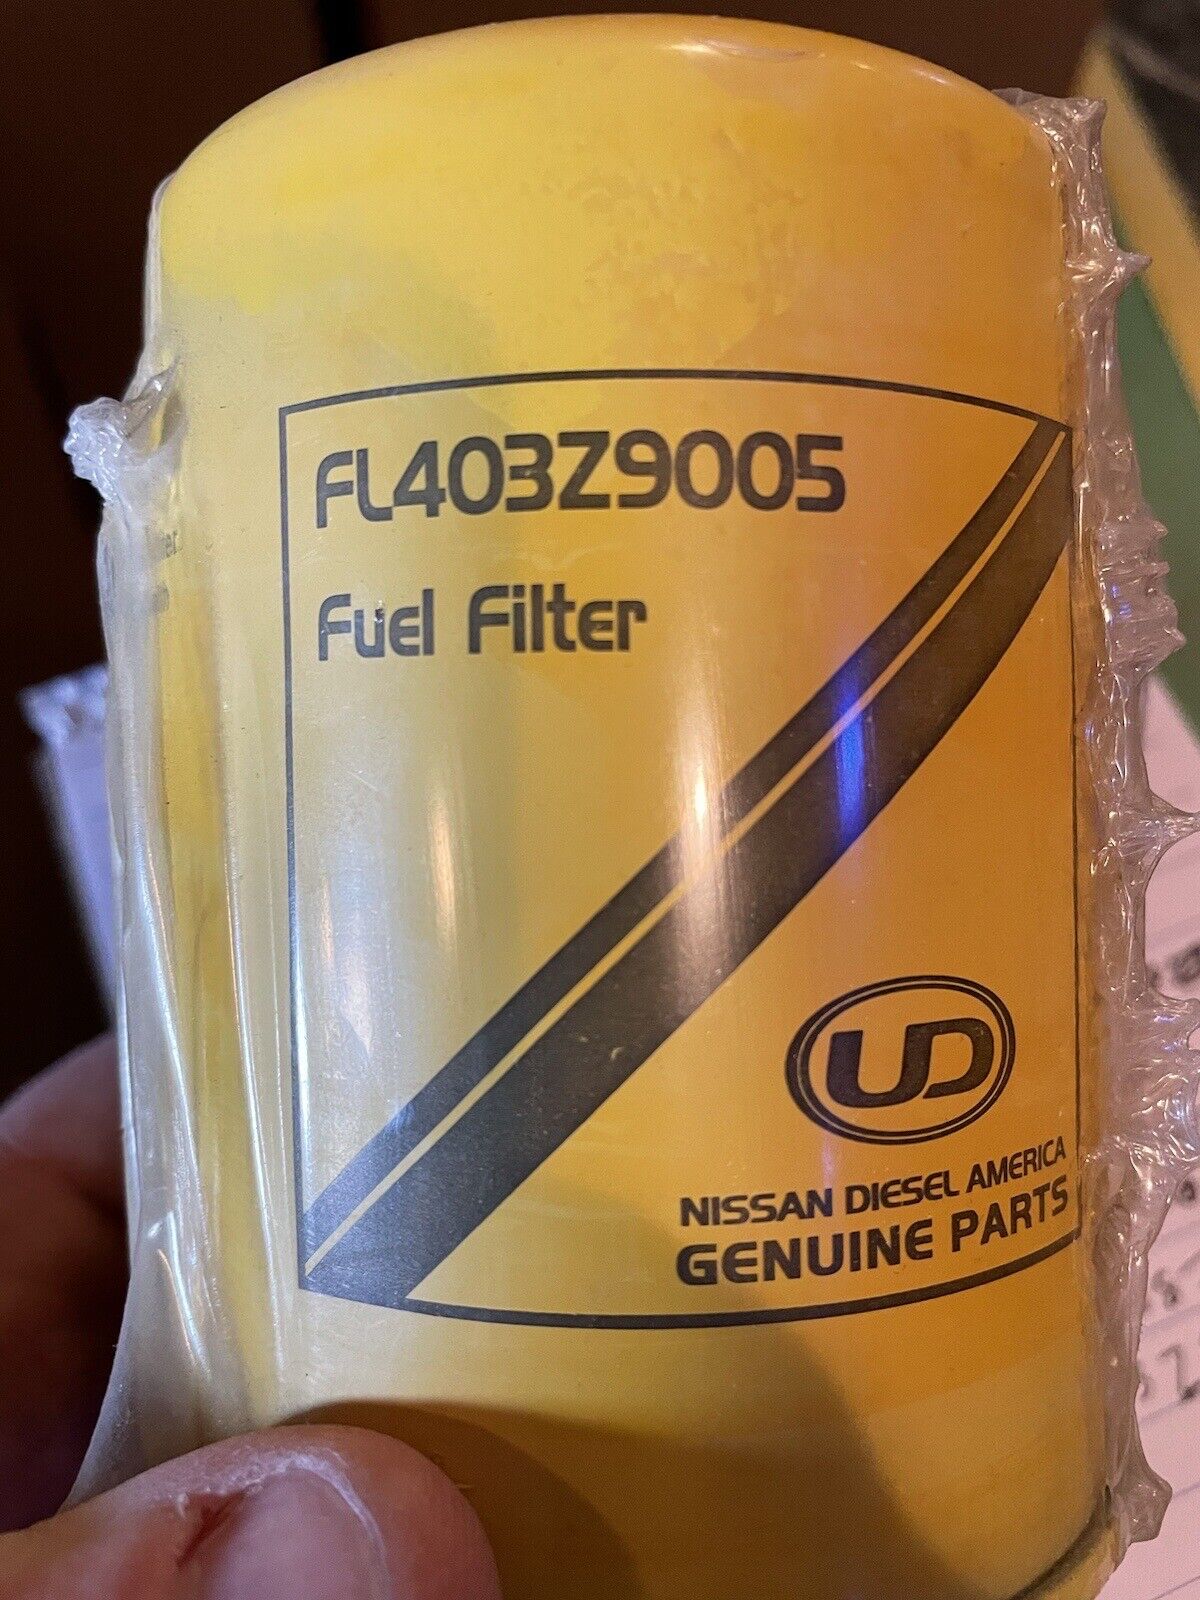 UD FL403Z9005  Nissan Genuine Fuel Filter filter